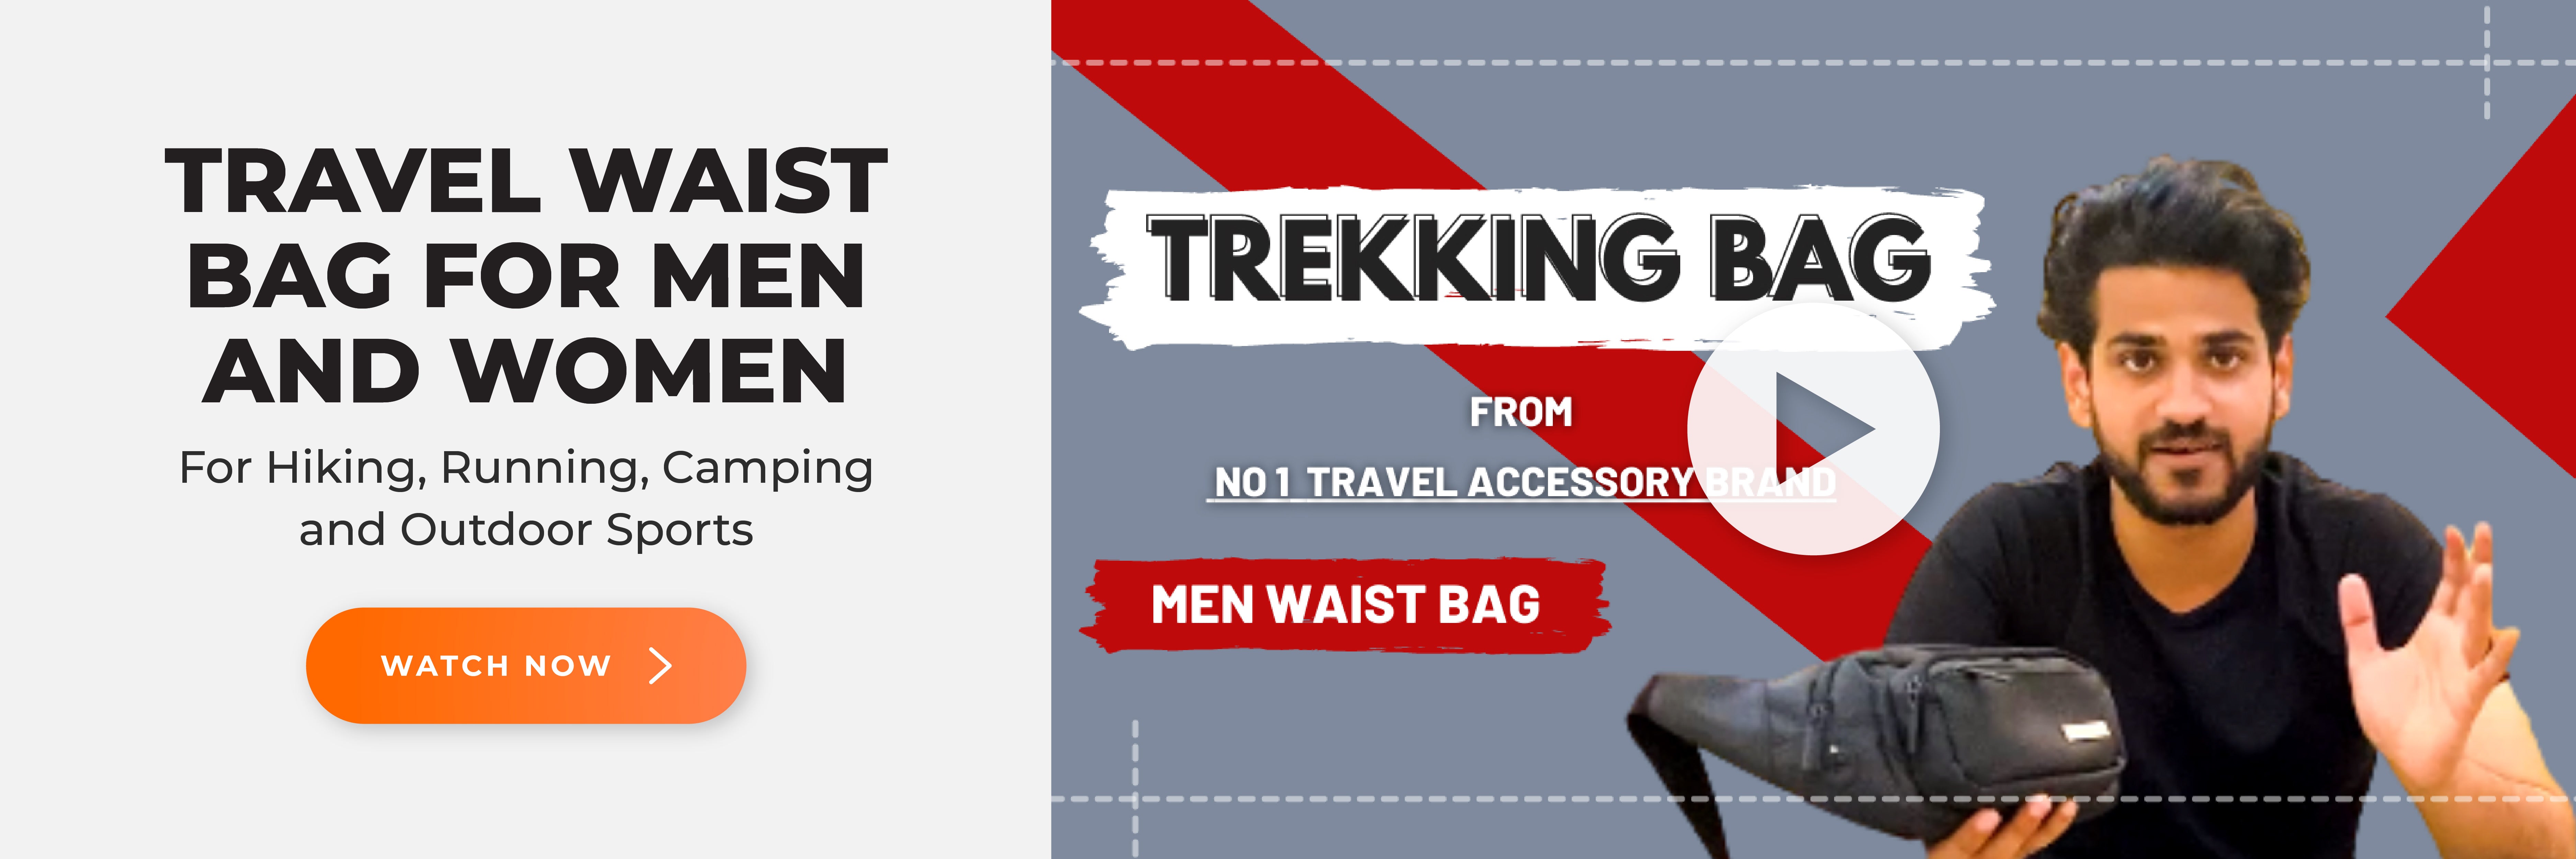 Hiking Bag Travel Accessories Online - Destinio